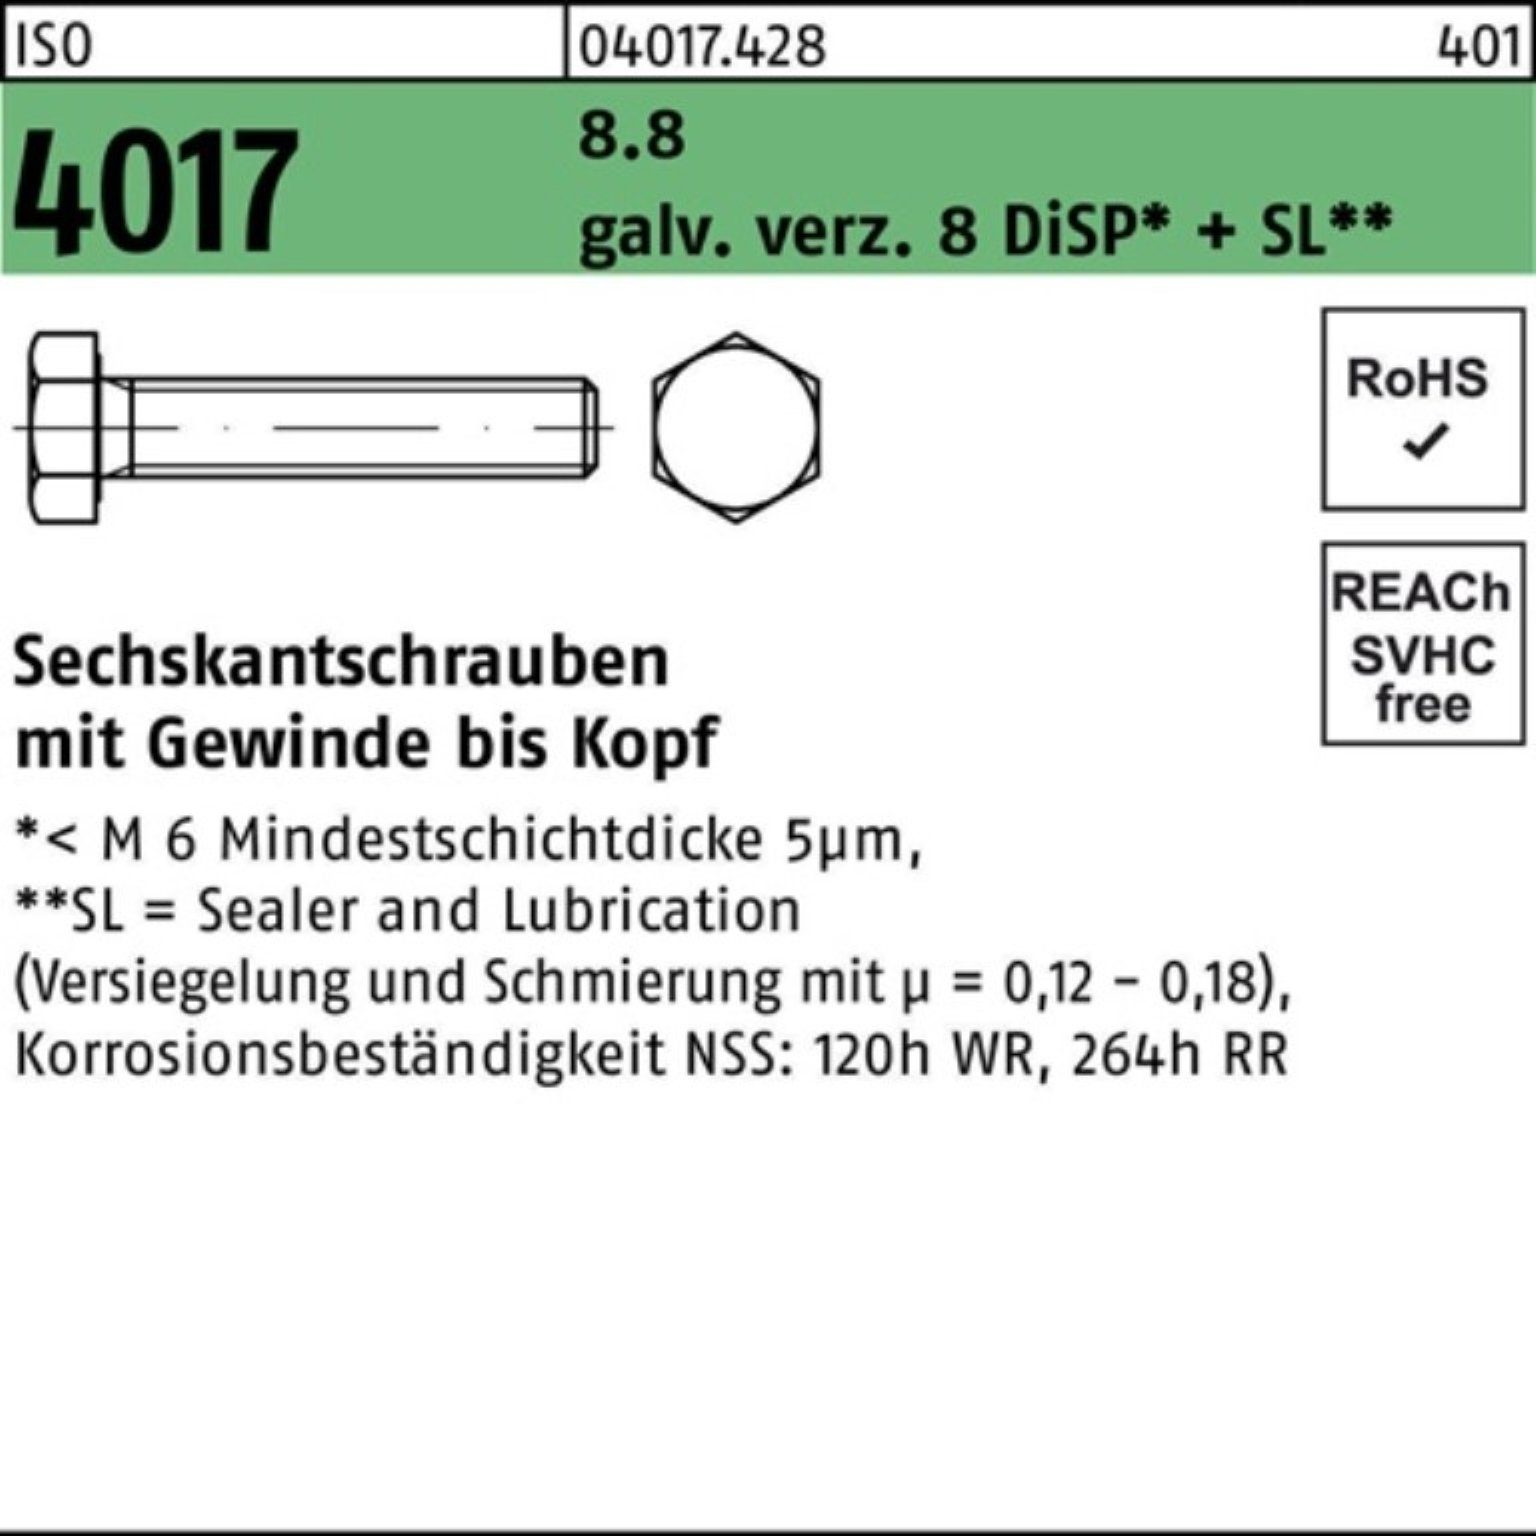 Bufab Sechskantschraube 100er M14x 4017 DiSP Sechskantschraube Pack 8 35 galv.verz. 8.8 ISO VG